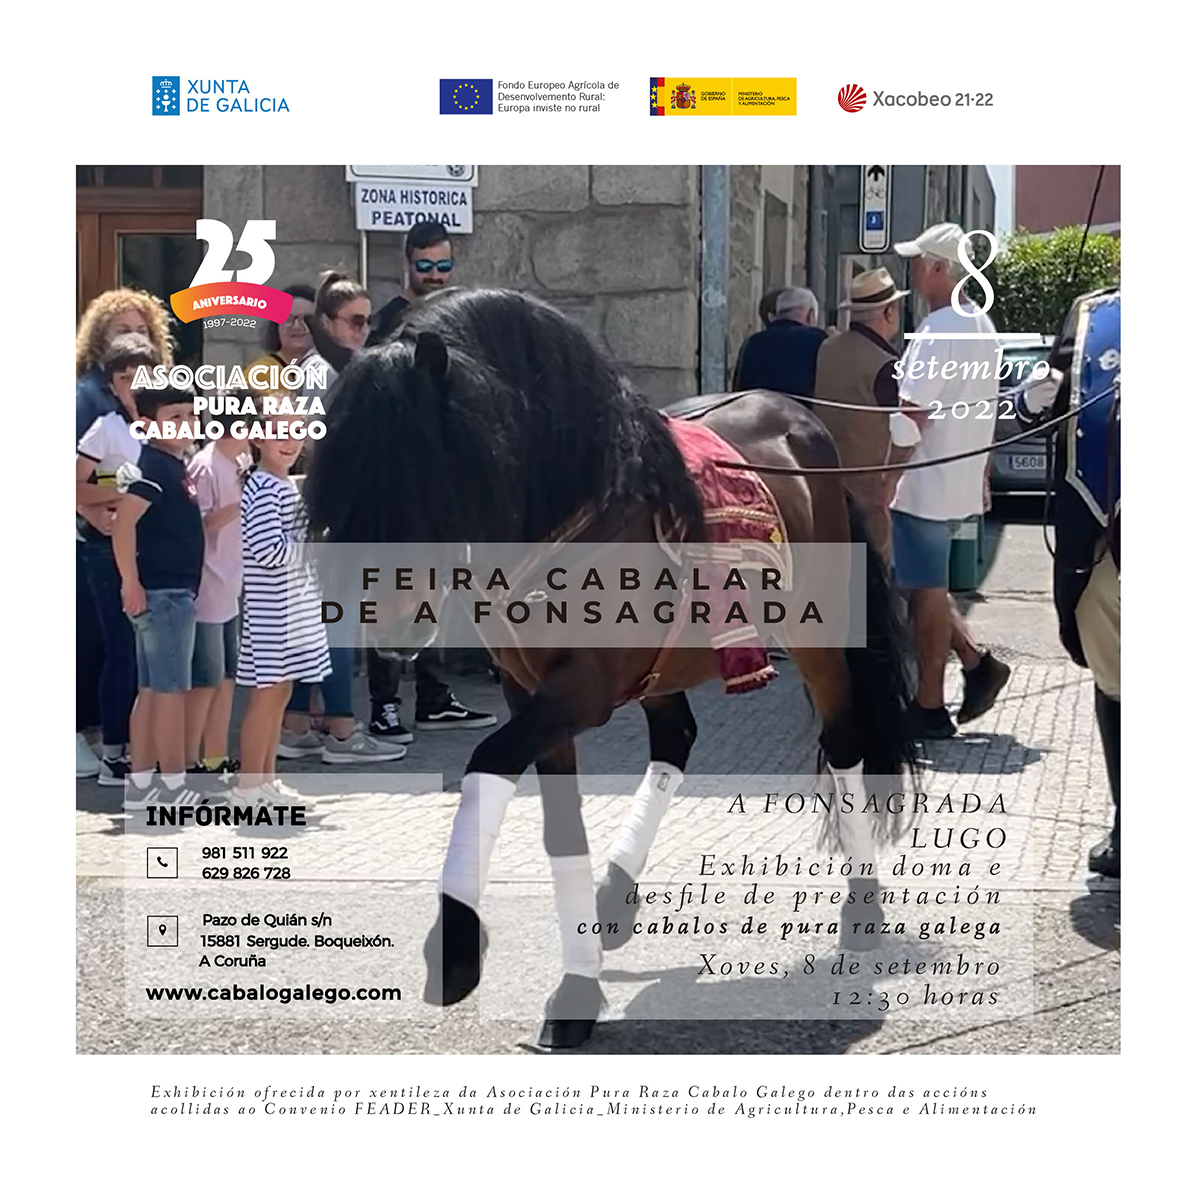 Exhibición de Doma con cabalos de pura raza galega A Fonsagrada. Lugo.